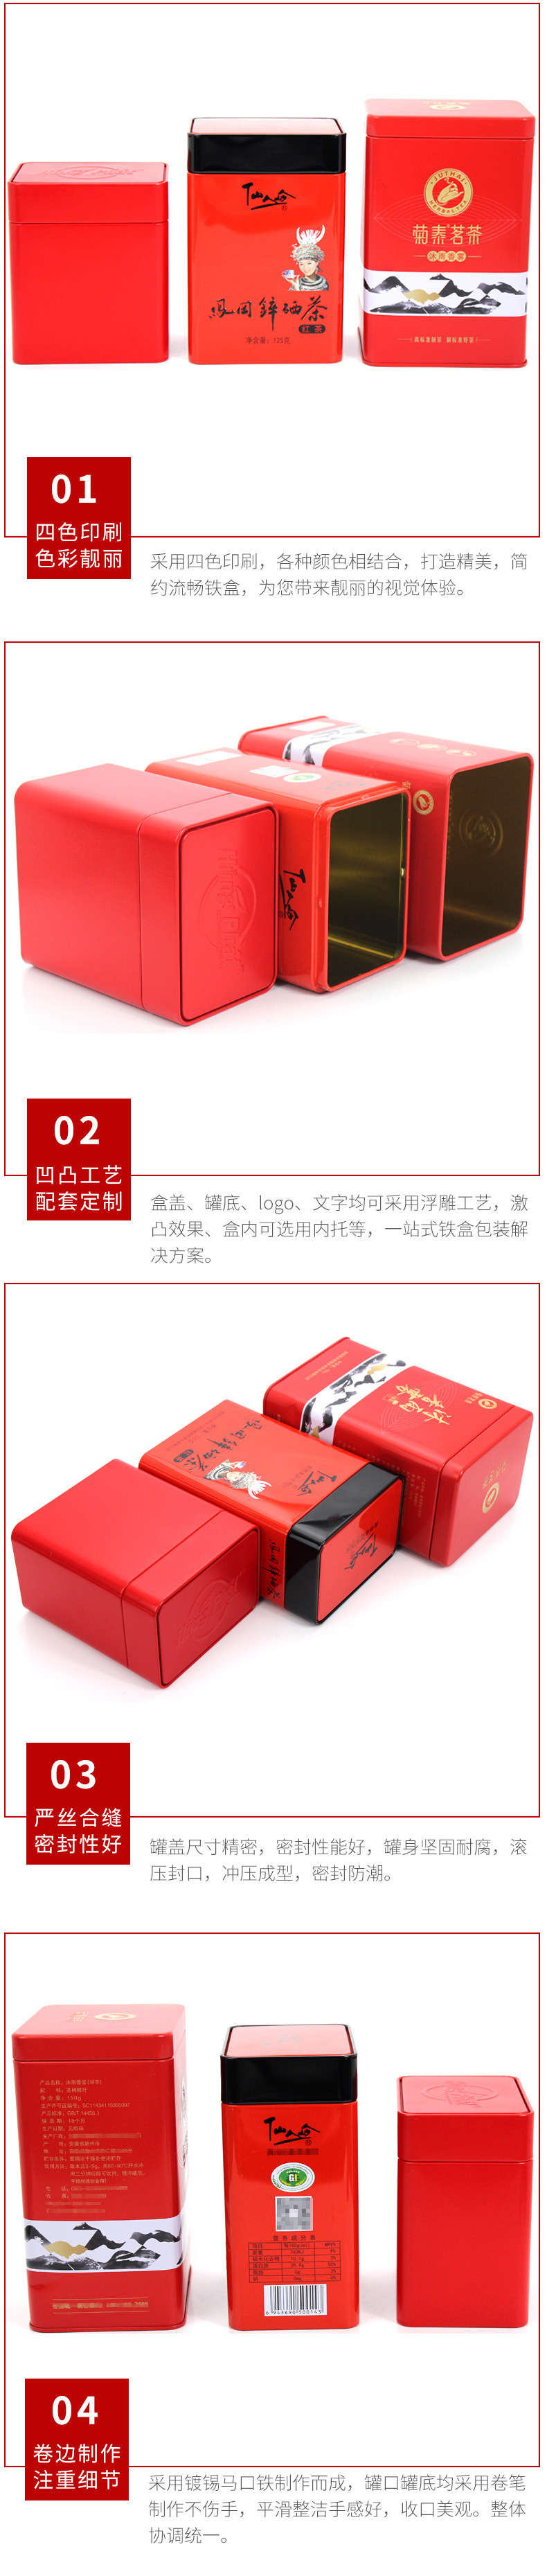 工厂直销红色长方形茶叶包装铁盒 茶叶罐铁罐 通用 方形铁盒定制示例图12